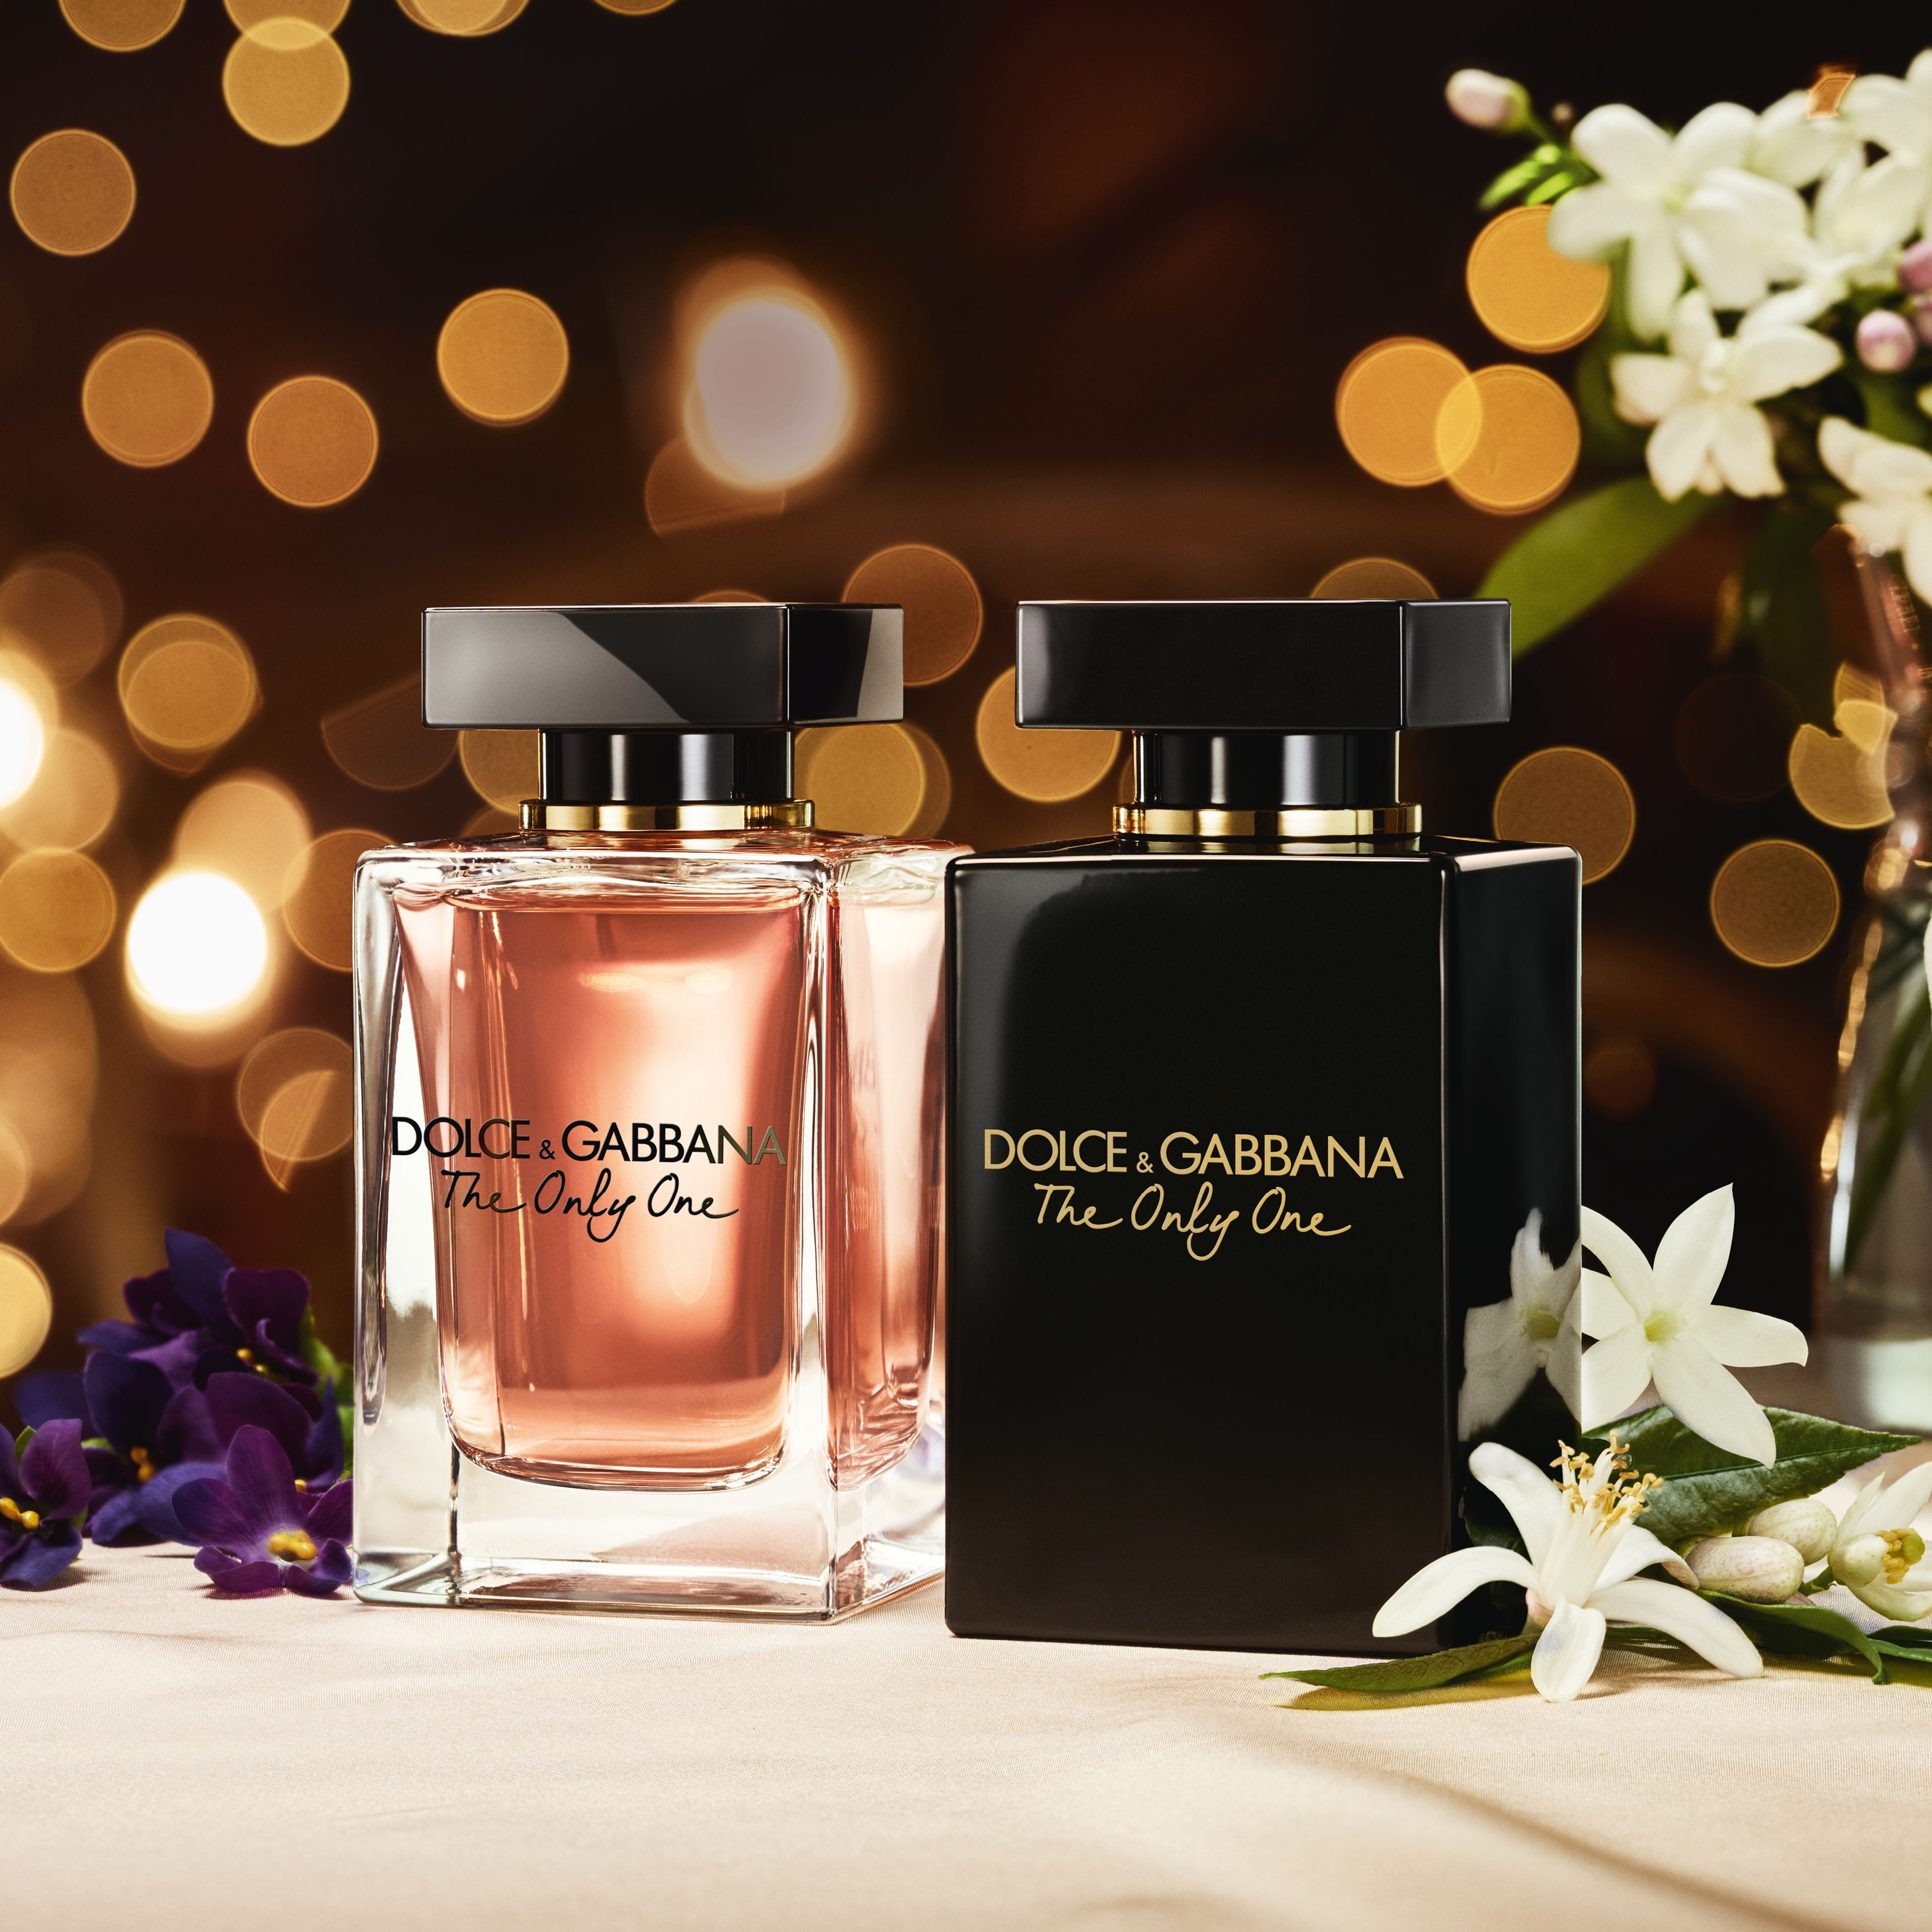 Dolce & Gabbana The Only One Eau De Parfum Intense Pour Femme 5